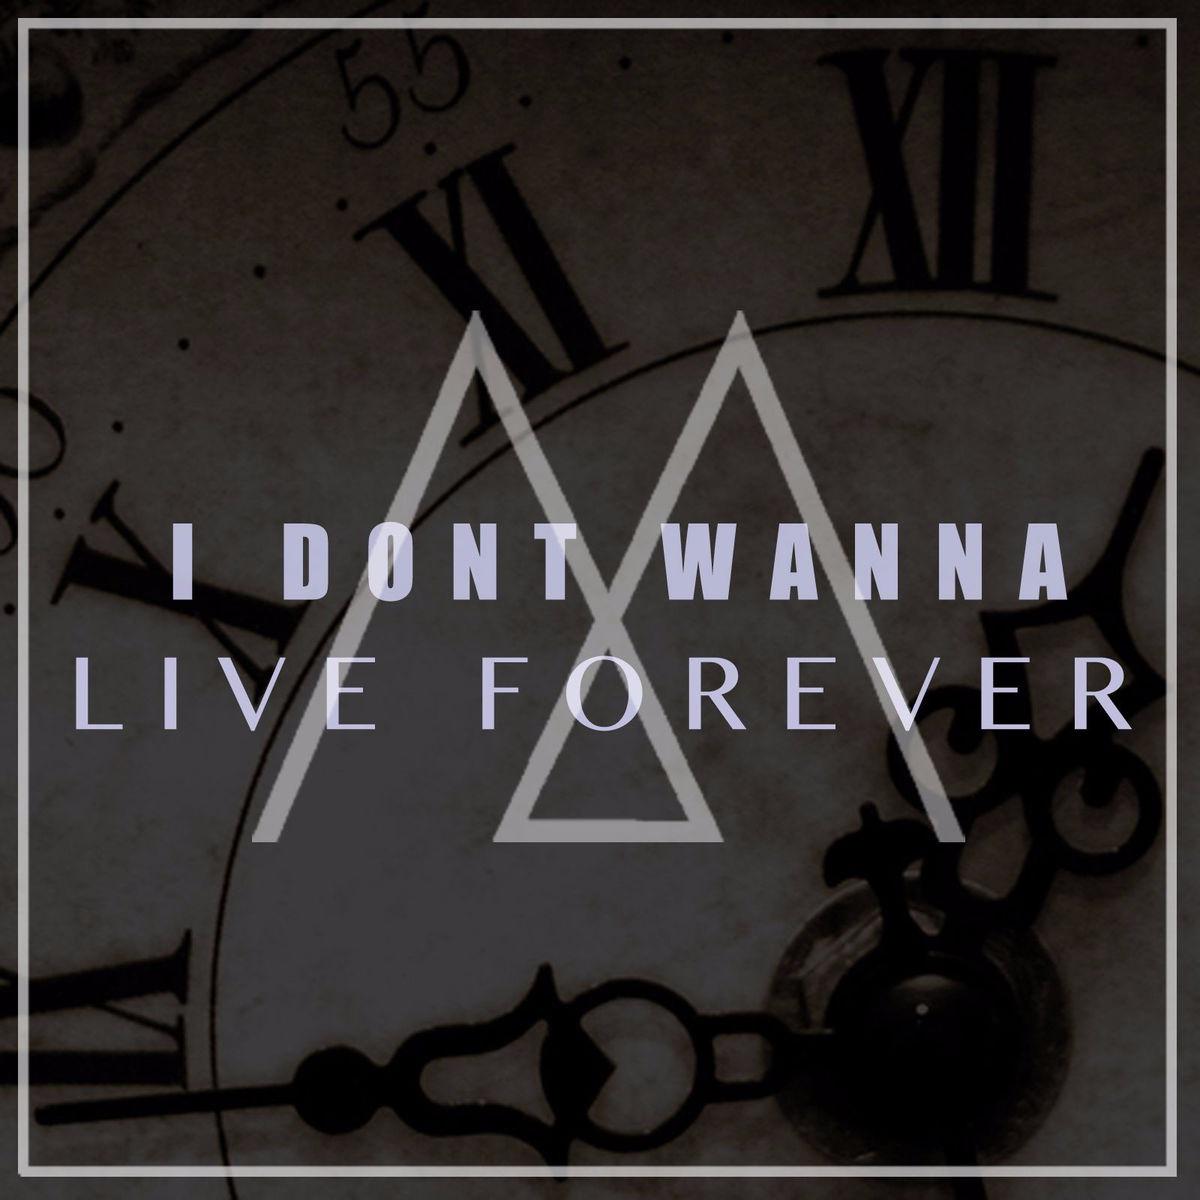 Песня i wanna Live. I don't wanna Live обложка. Обложка песни Live Forever. Live Forever text.